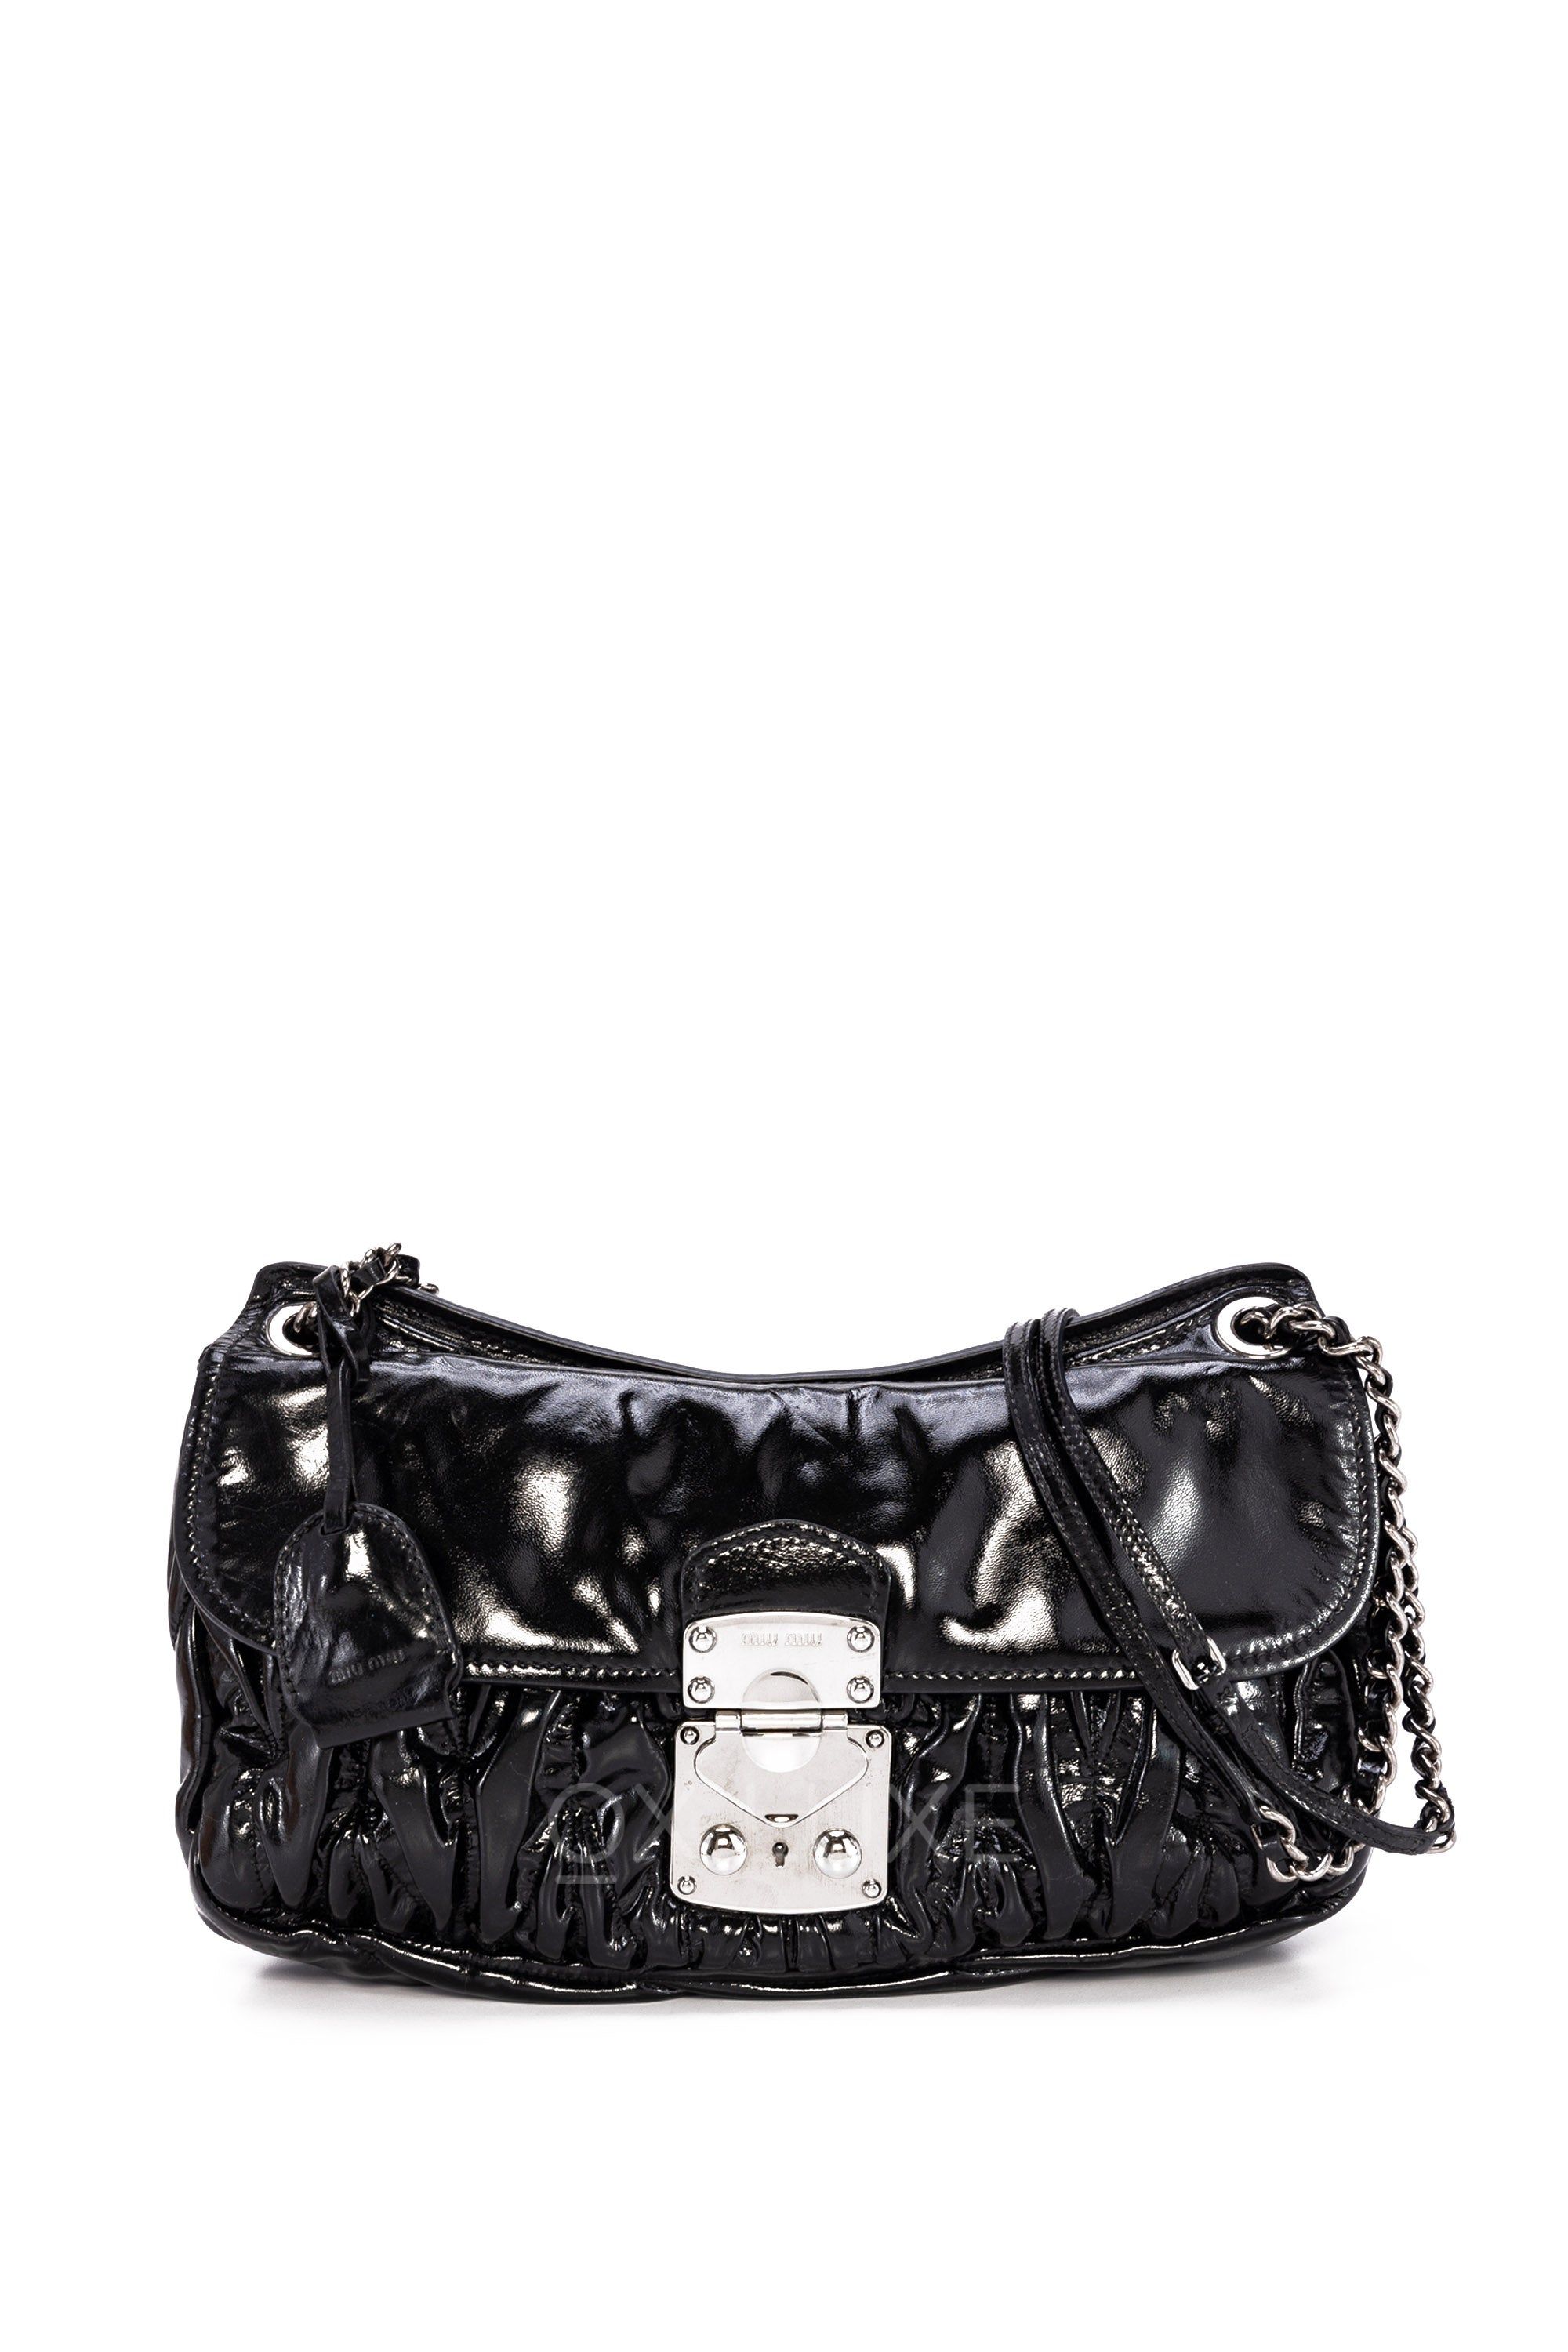 pre-loved authentic MIU MIU Black Leather Flap Pocket Zip Top SHOULDERBAG  $2200